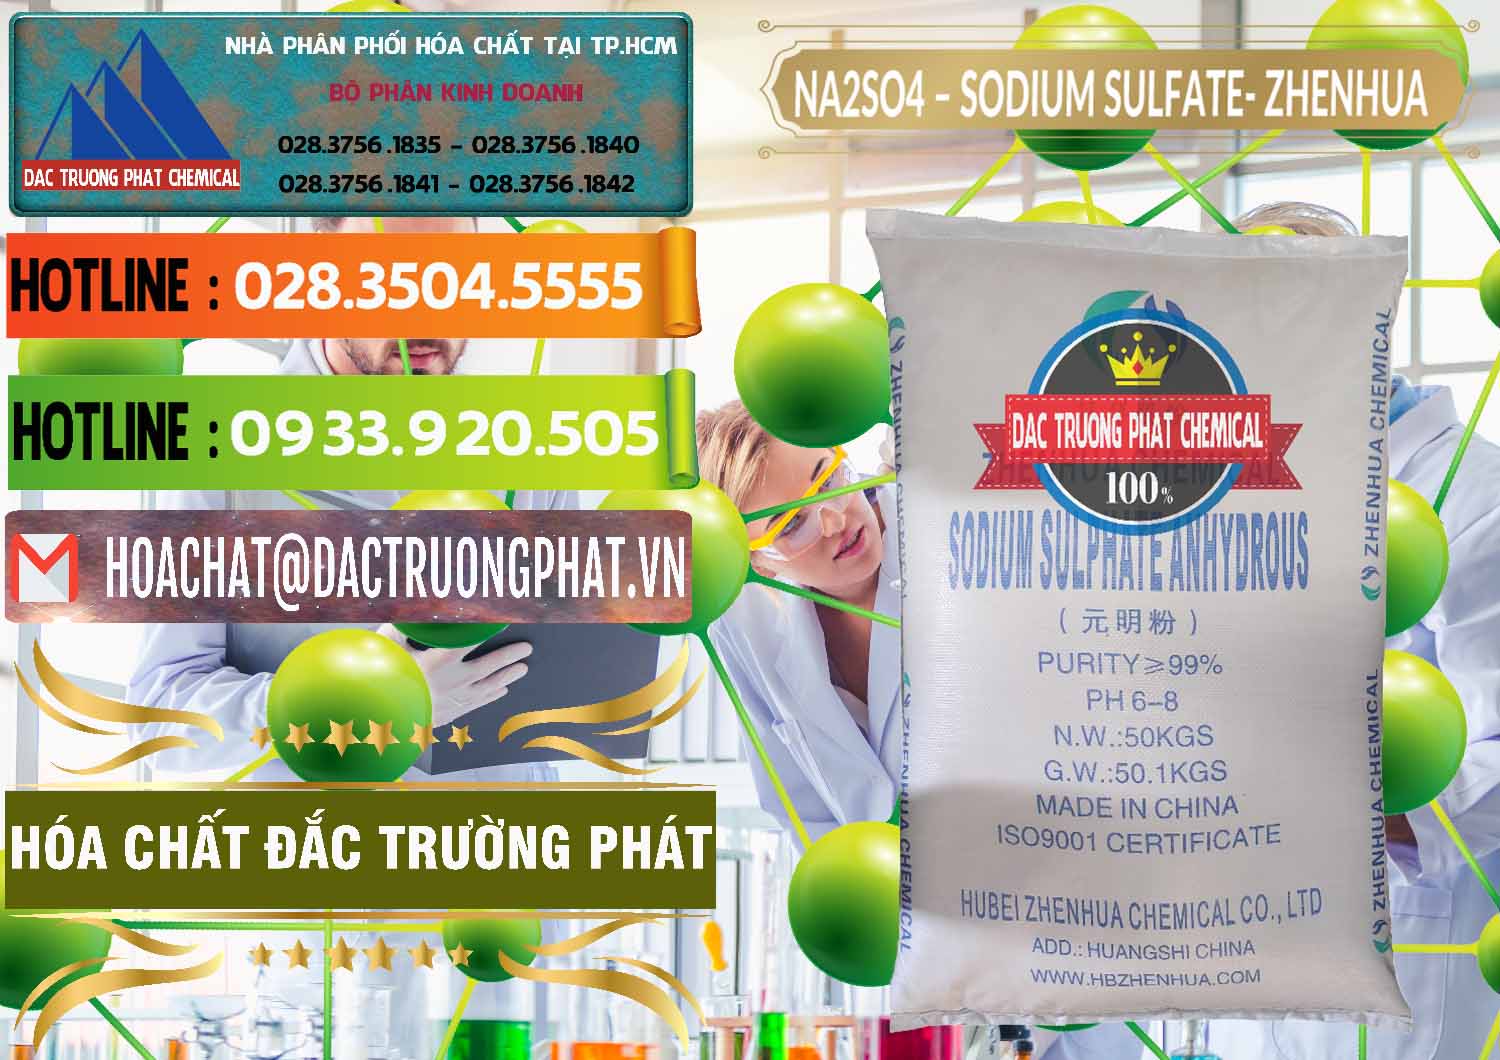 Nơi chuyên bán _ cung cấp Sodium Sulphate - Muối Sunfat Na2SO4 Zhenhua Trung Quốc China - 0101 - Nơi bán và cung cấp hóa chất tại TP.HCM - cungcaphoachat.com.vn